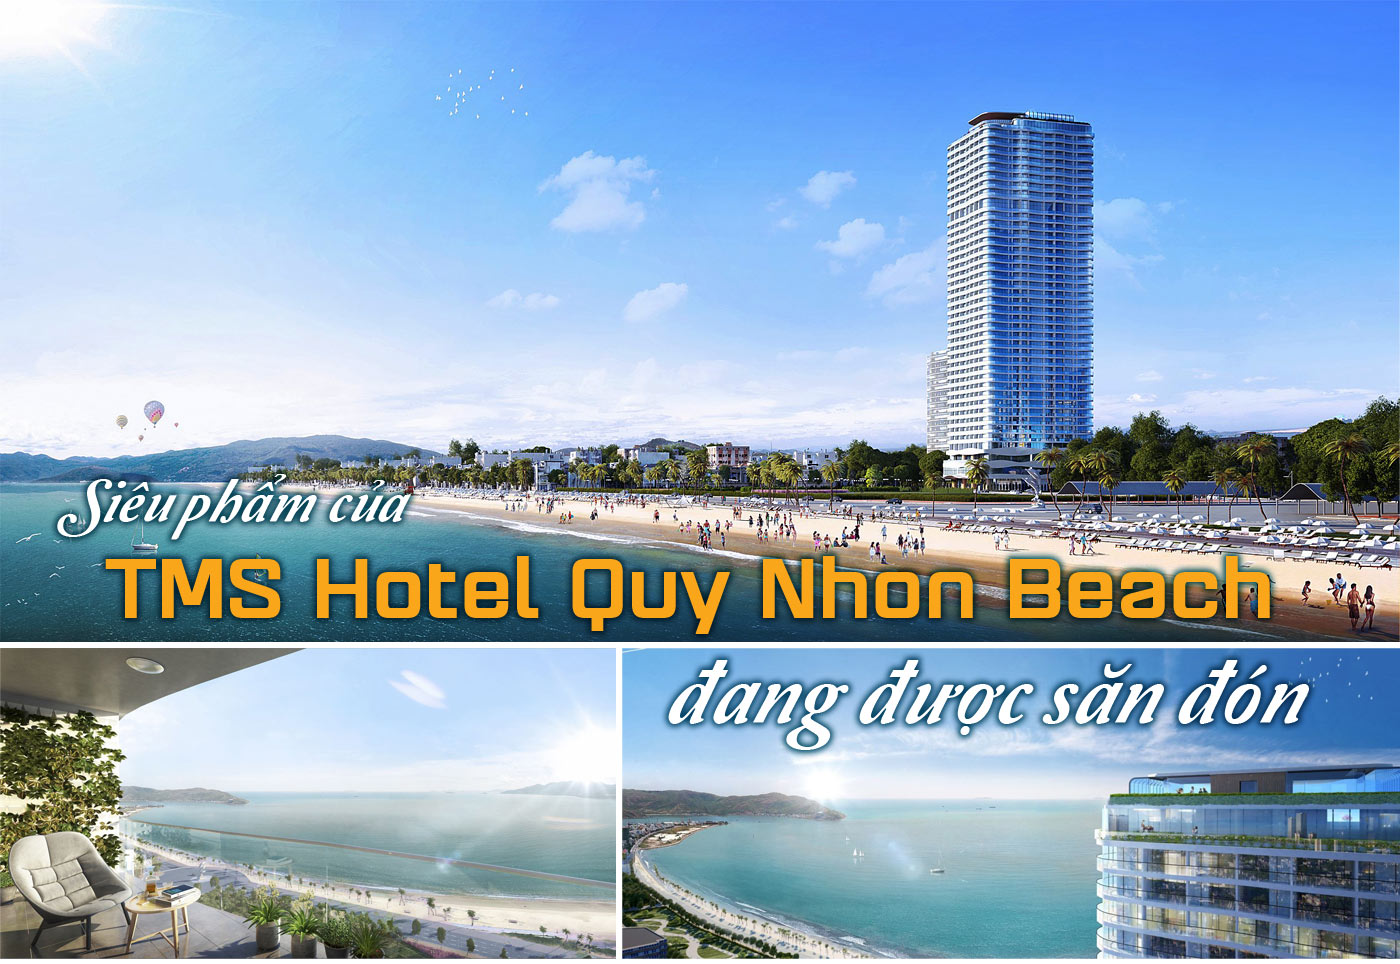 Siêu phẩm của TMS Hotel Quy Nhon Beach đang được săn đón - Ảnh 1